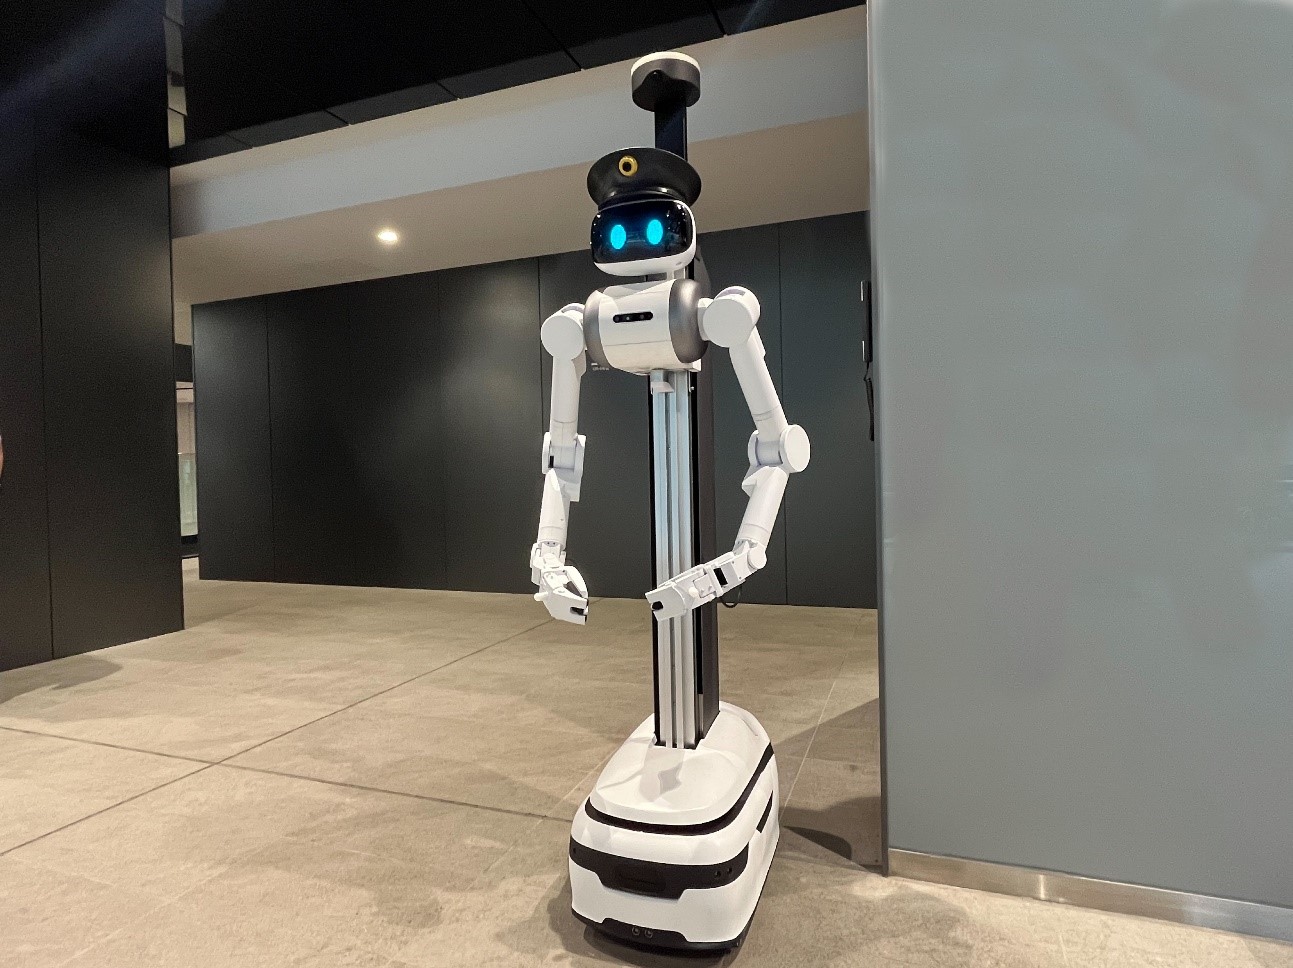 アバター警備ロボット「ugo(ユーゴー)® TSシリーズ」早稲田大学リサーチイノベーションセンターで実証実験を実施